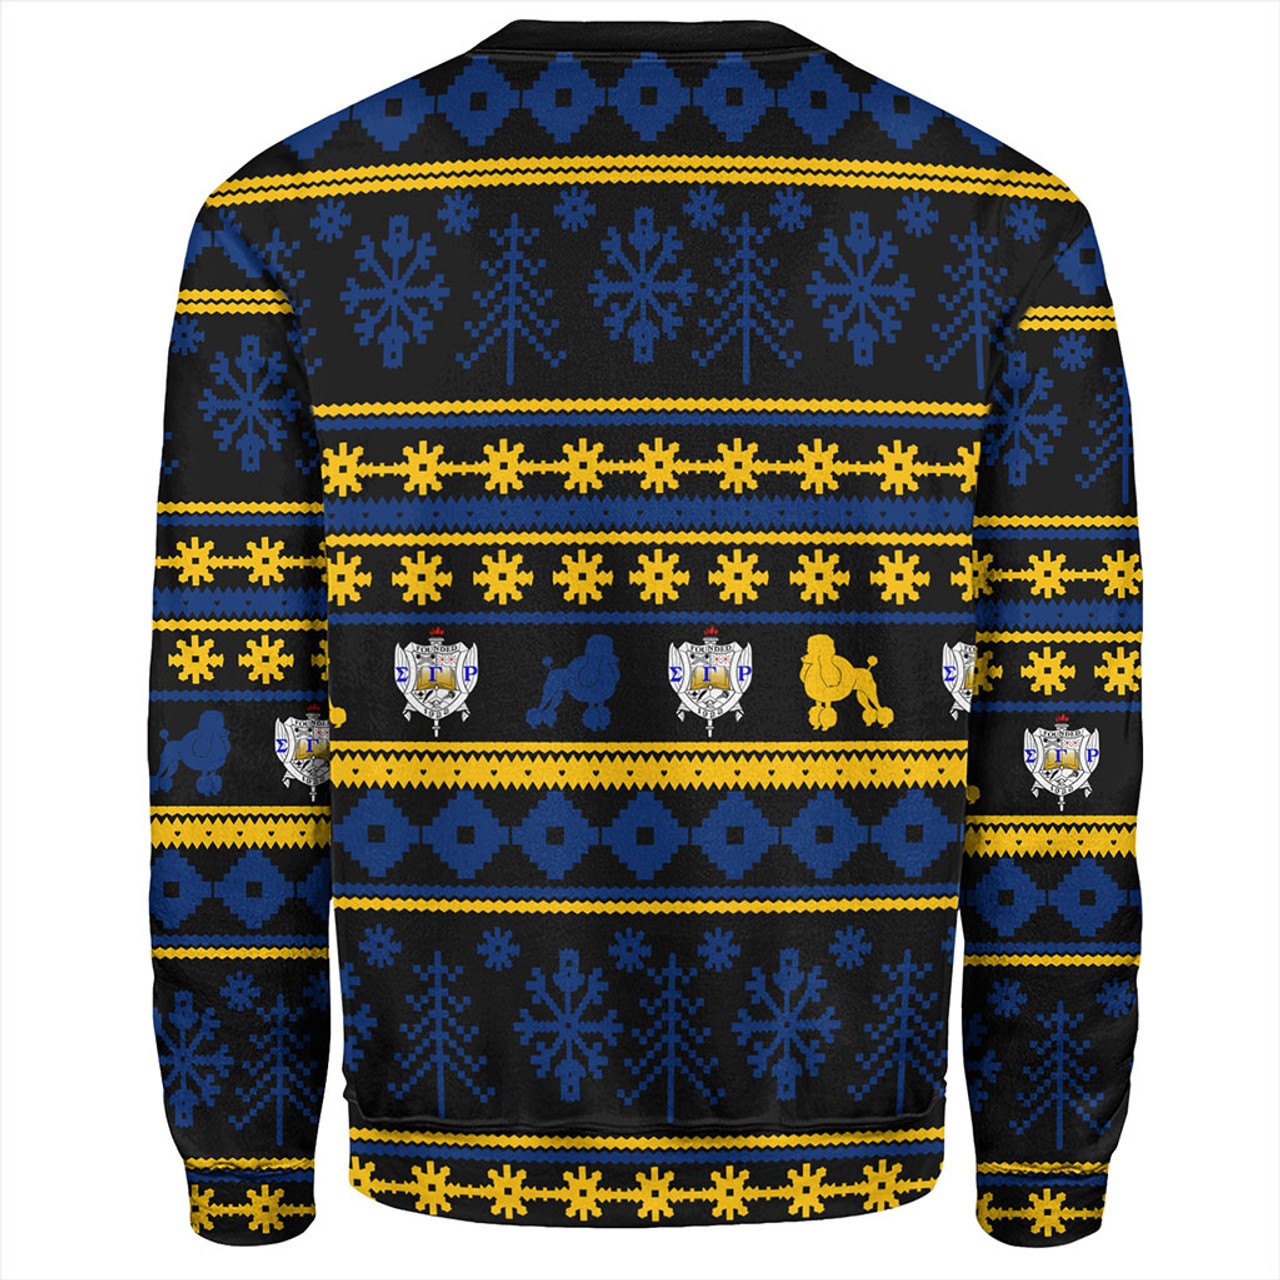 Sigma Gamma Rho Sweatshirt Christmas Style Grunge